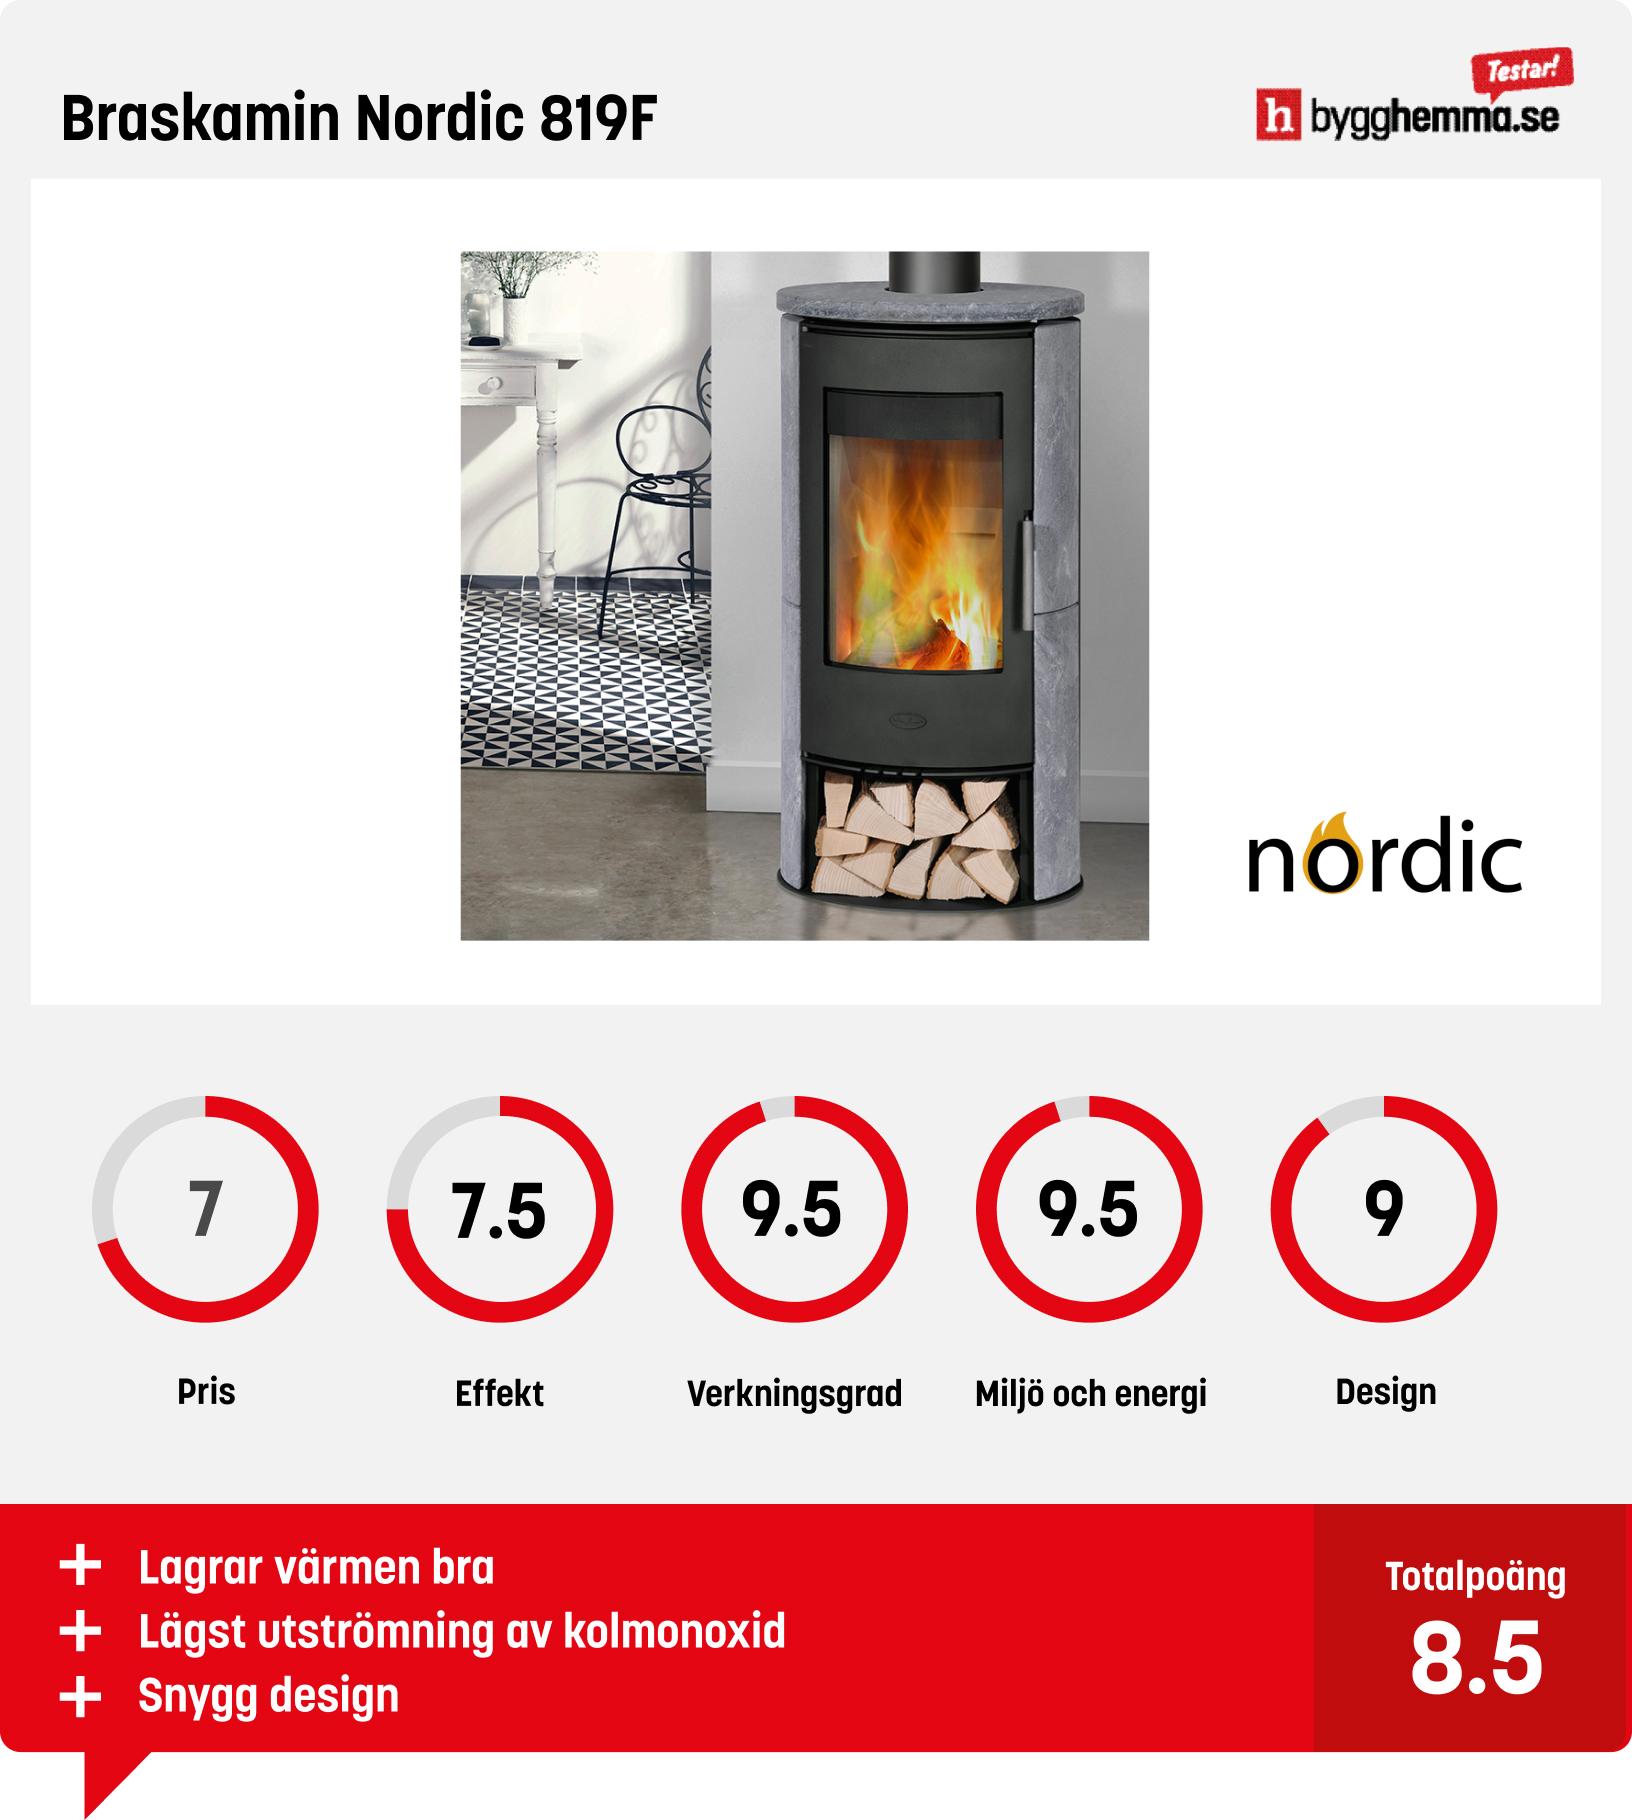 Braskamin bäst i test - Braskamin Nordic 819F